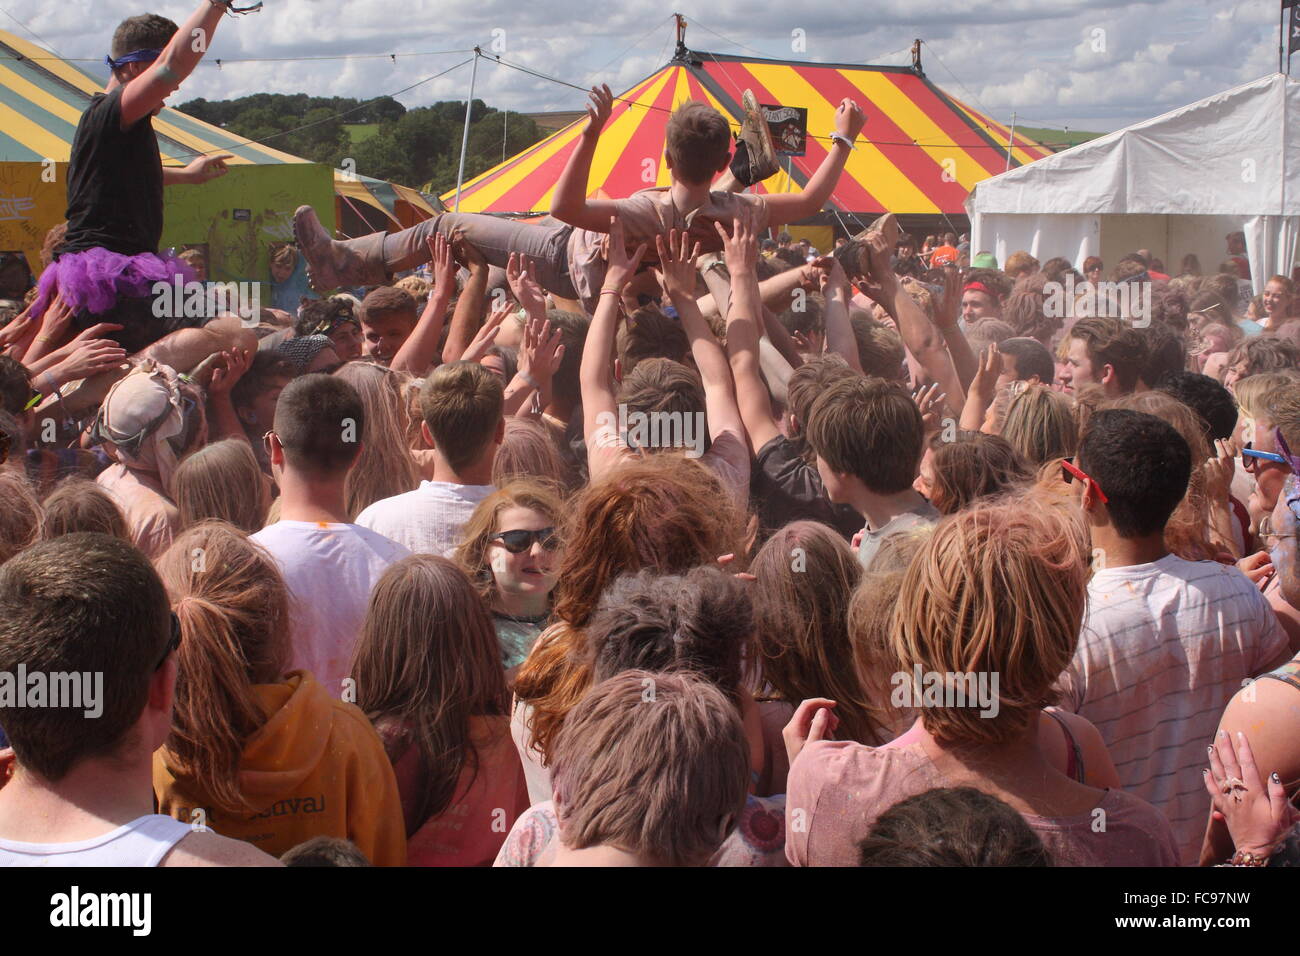 Un festival goer est portée au-dessus de la foule lors d'une peinture en poudre à la lutte Y Pas music festival, Derbyshire UK - été Banque D'Images